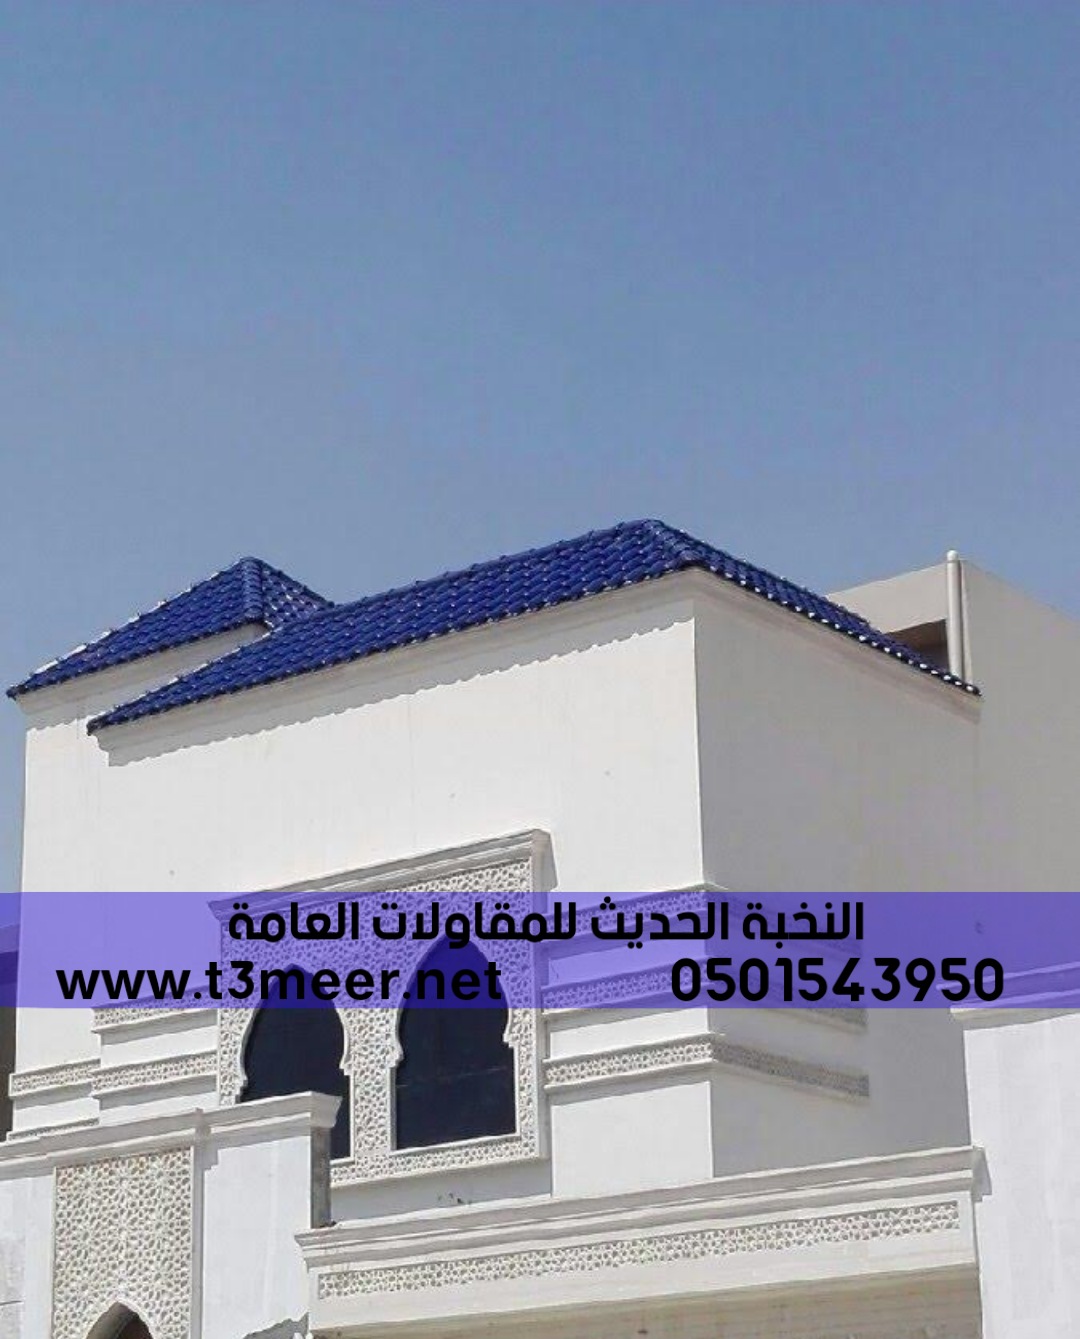 الرياض الشرقية, 0501543950